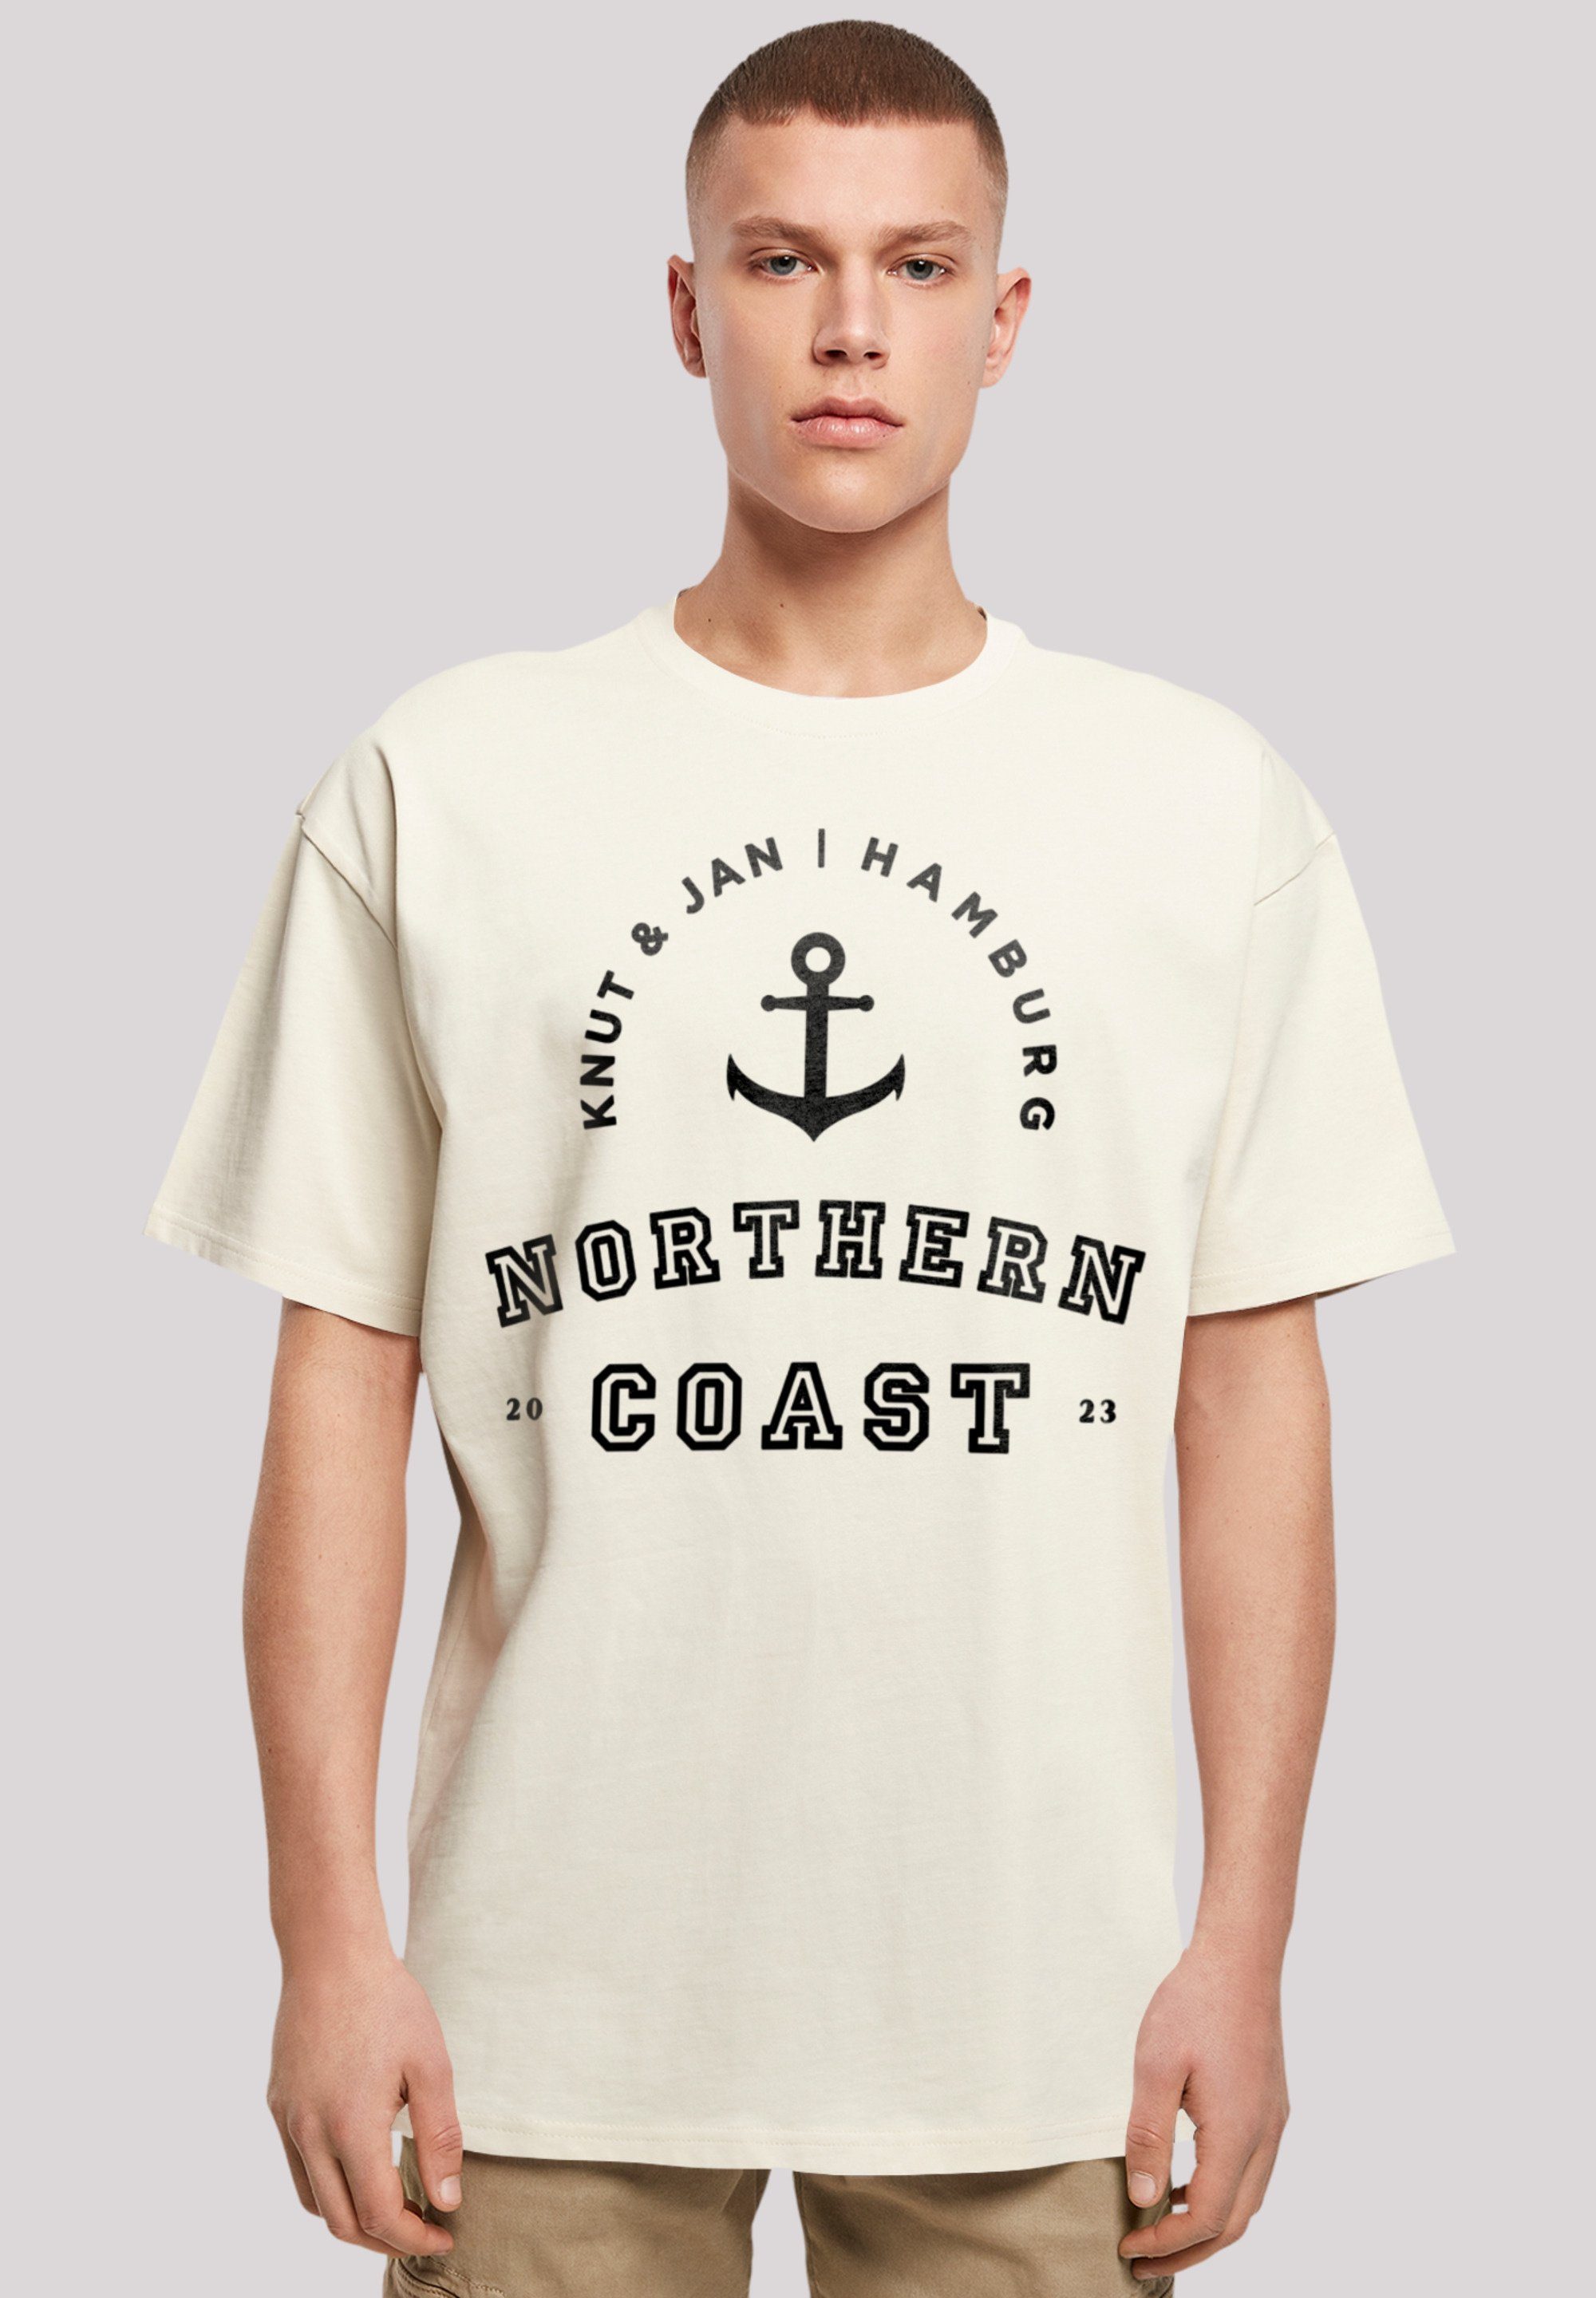 Northern Coast T-Shirt Knut Nordsee sand & Jan F4NT4STIC Hamburg Print